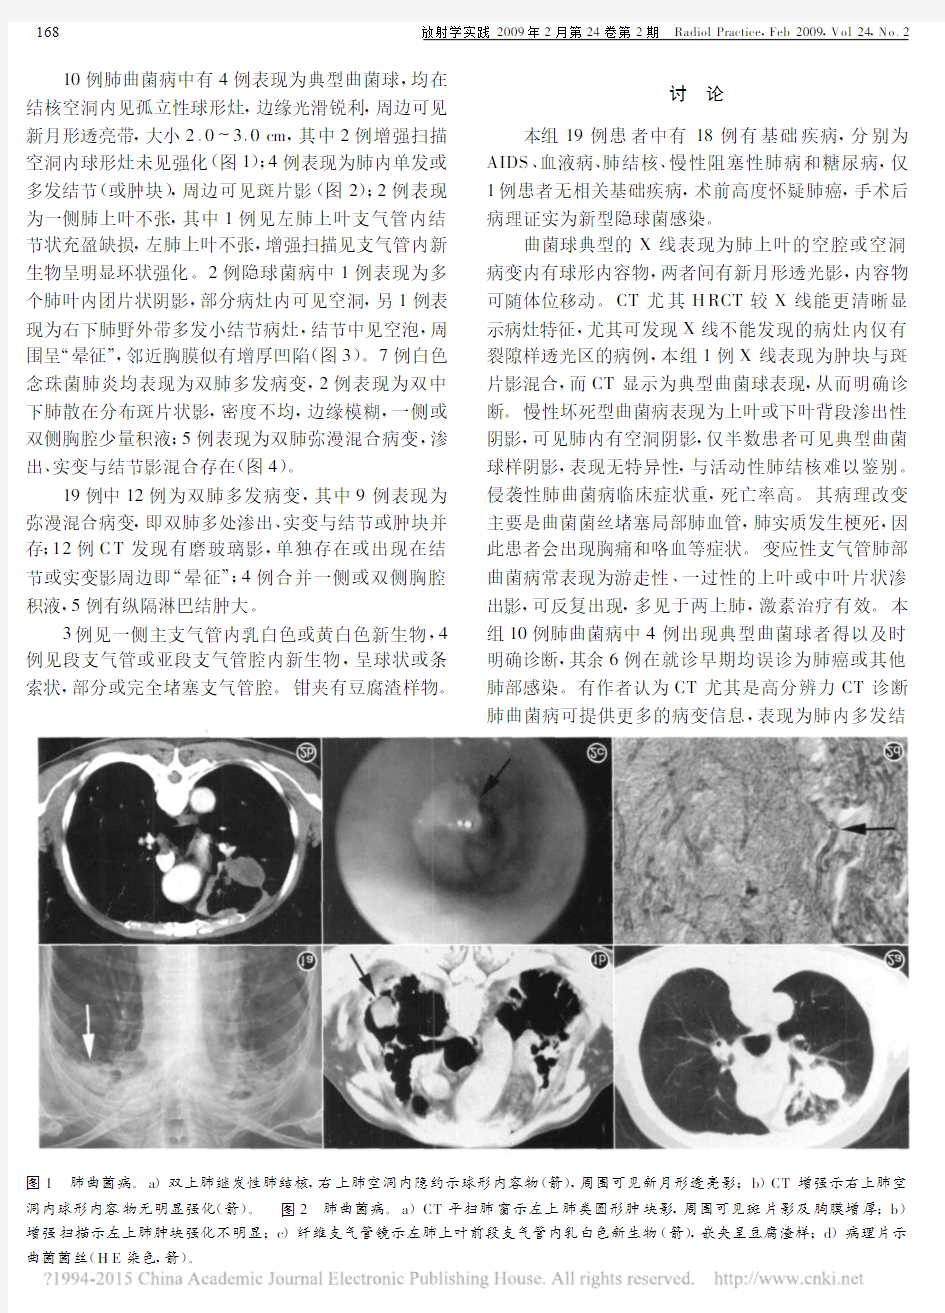 肺真菌病的影像征象分析与诊断_徐丽莹